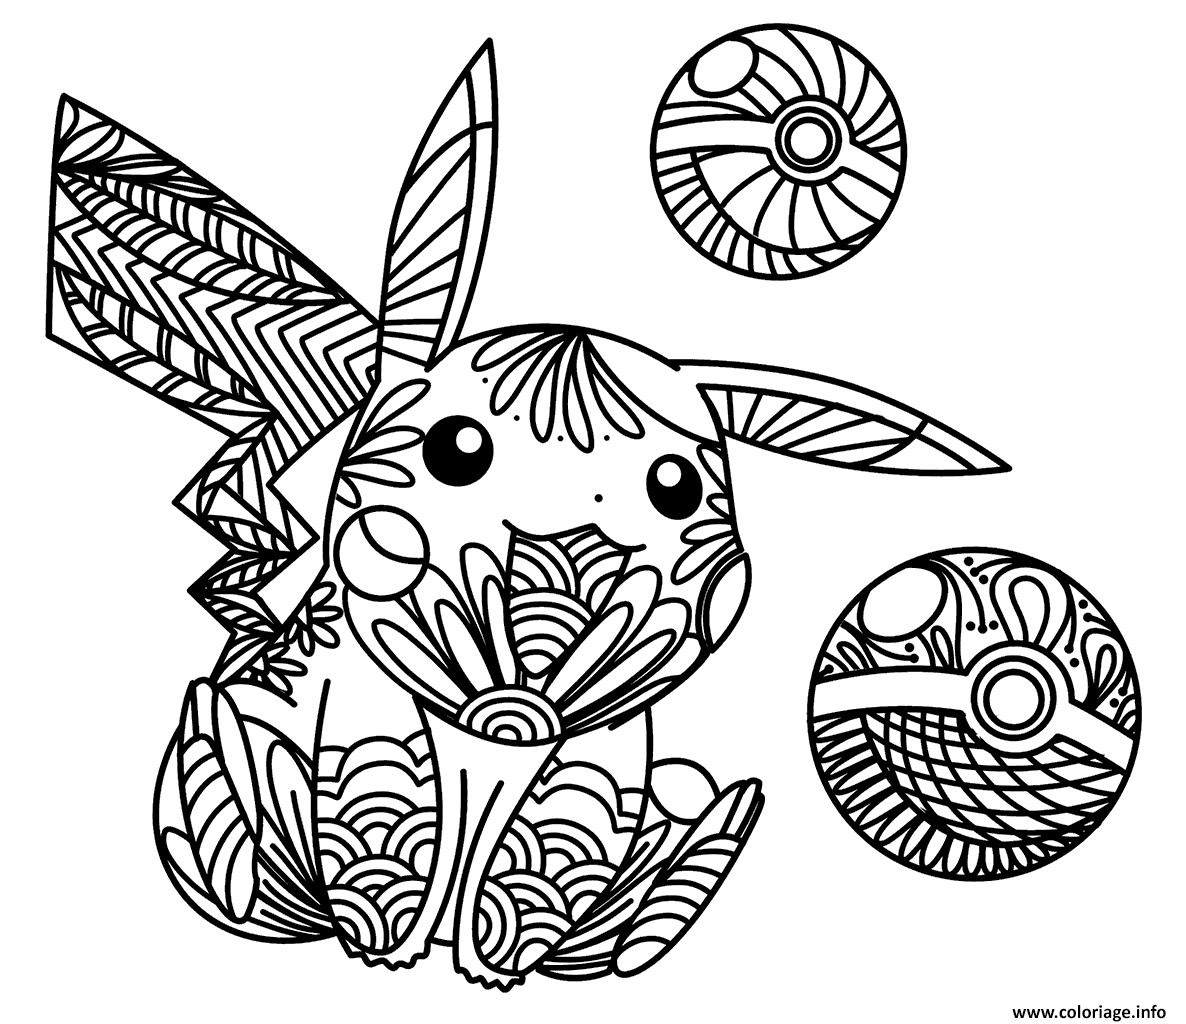 Dessin Zen Pikachu mandala Coloriage Gratuit à Imprimer